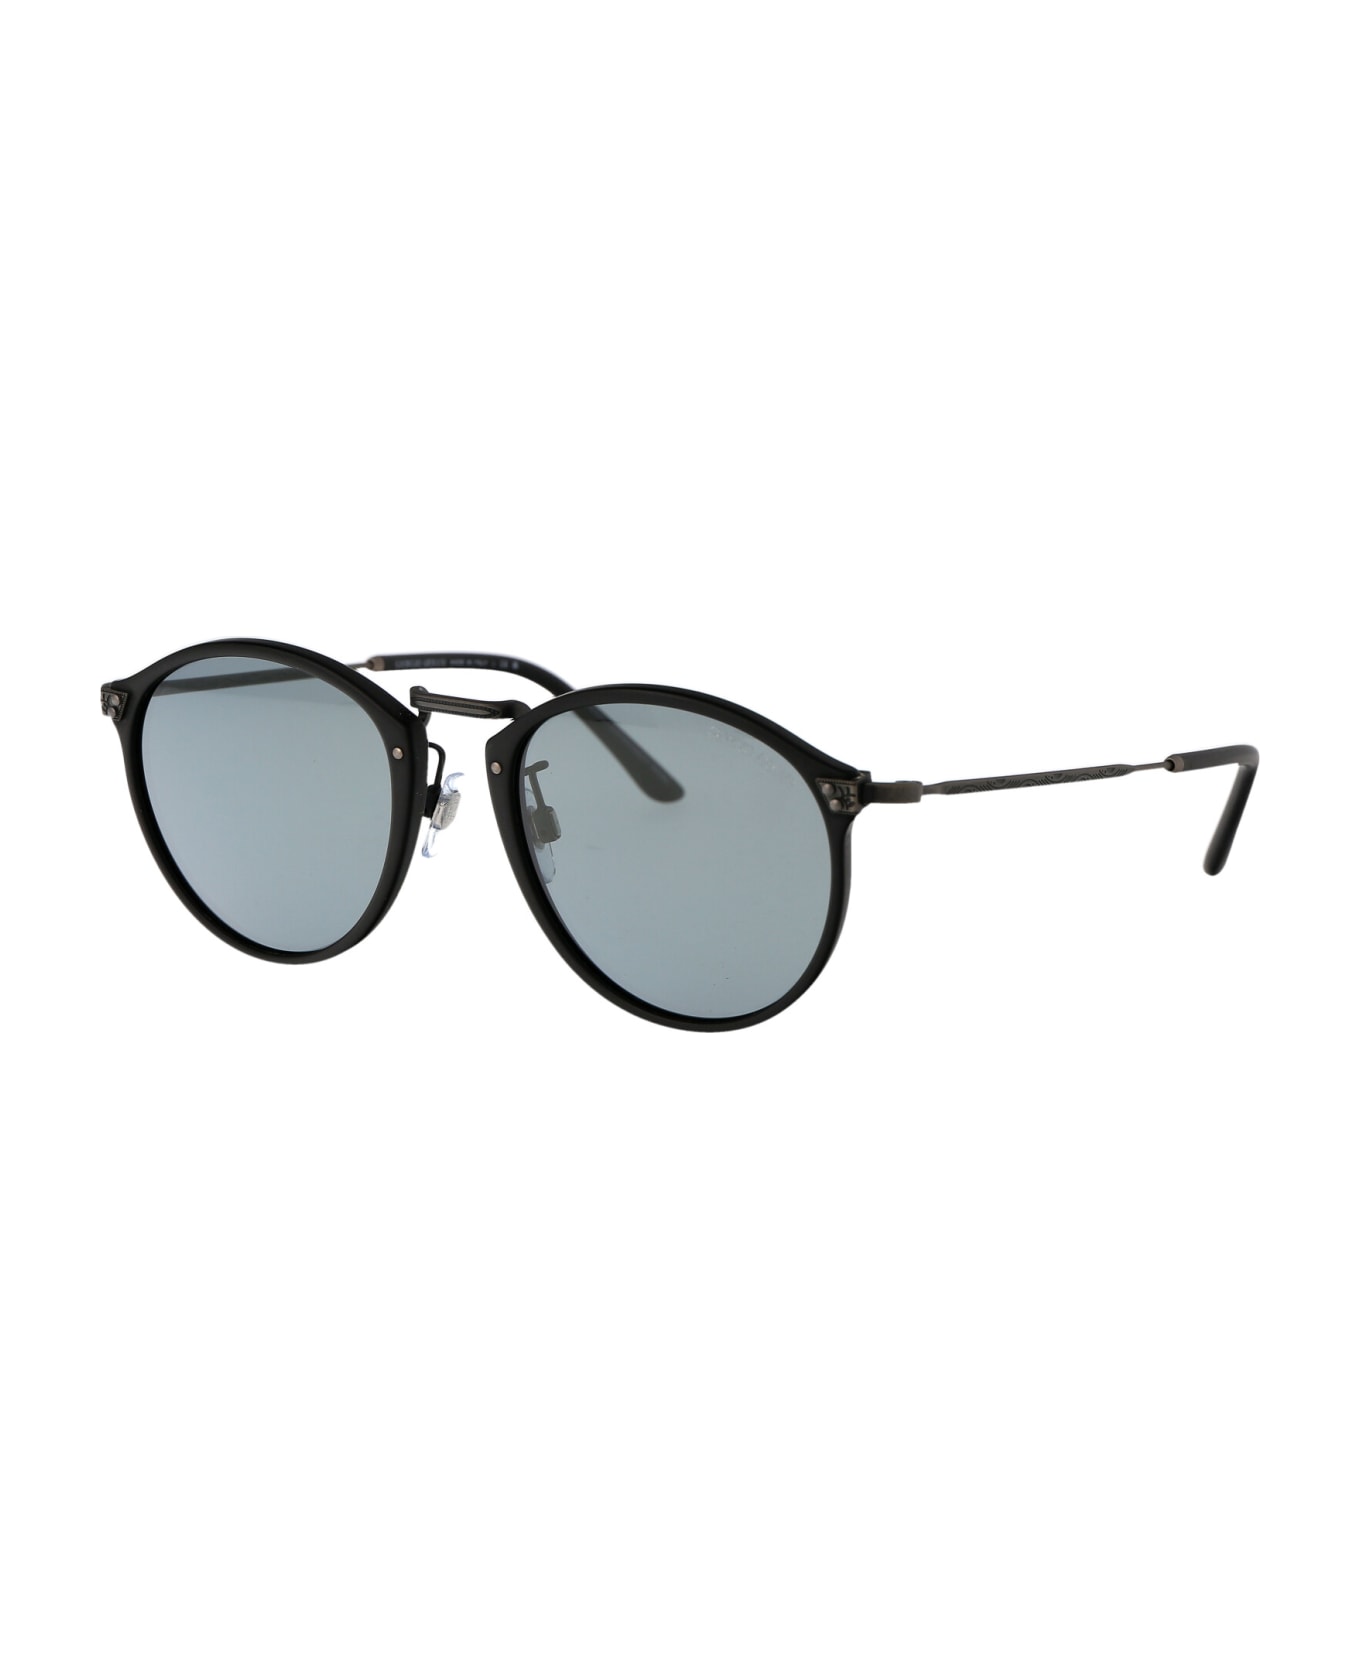 Giorgio Armani 0ar 318sm Sunglasses - 504256 Matte Black